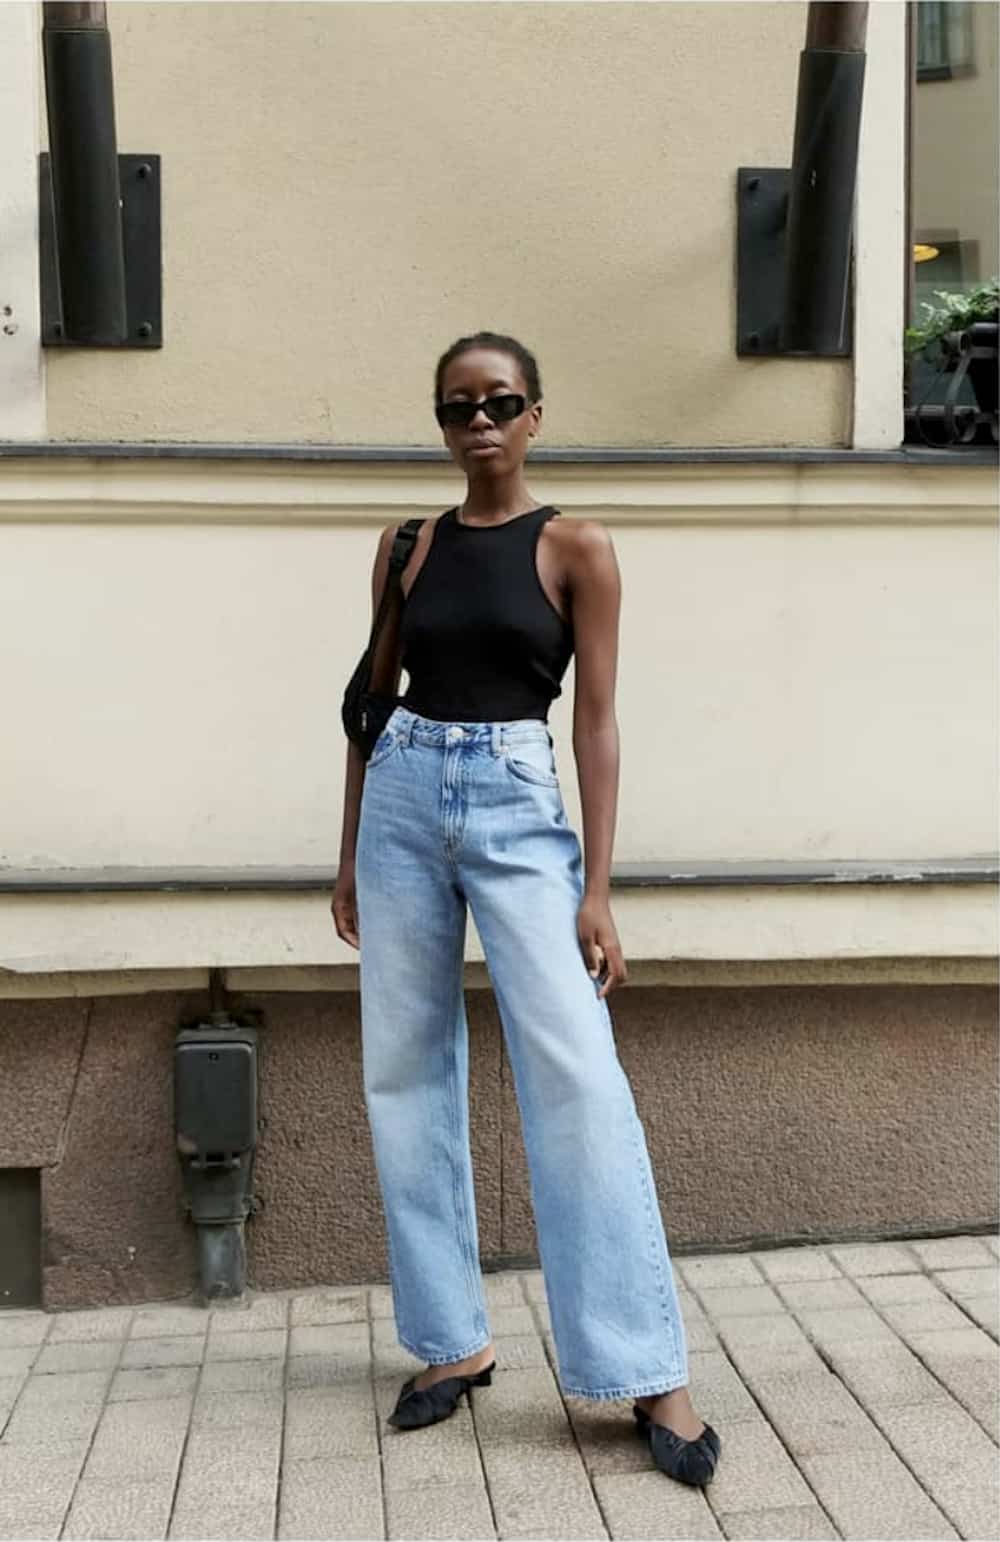 Надя Дорофеева показала, как стильно носить трендовые широкие джинсы летом